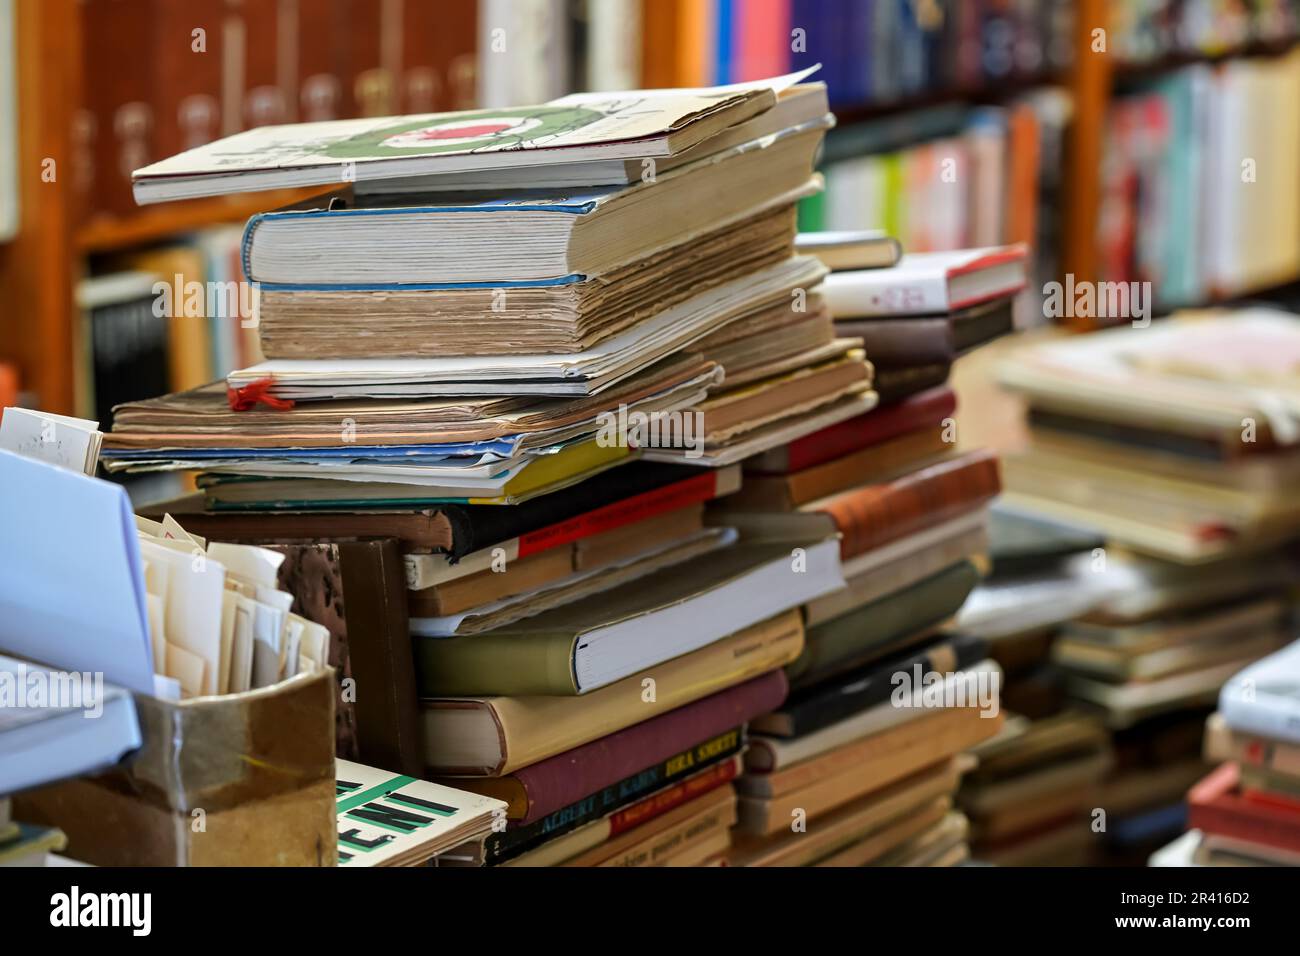 Stapel von vielen alten gebrauchten Büchern, die im örtlichen Antiquariat ausgestellt sind Stockfoto